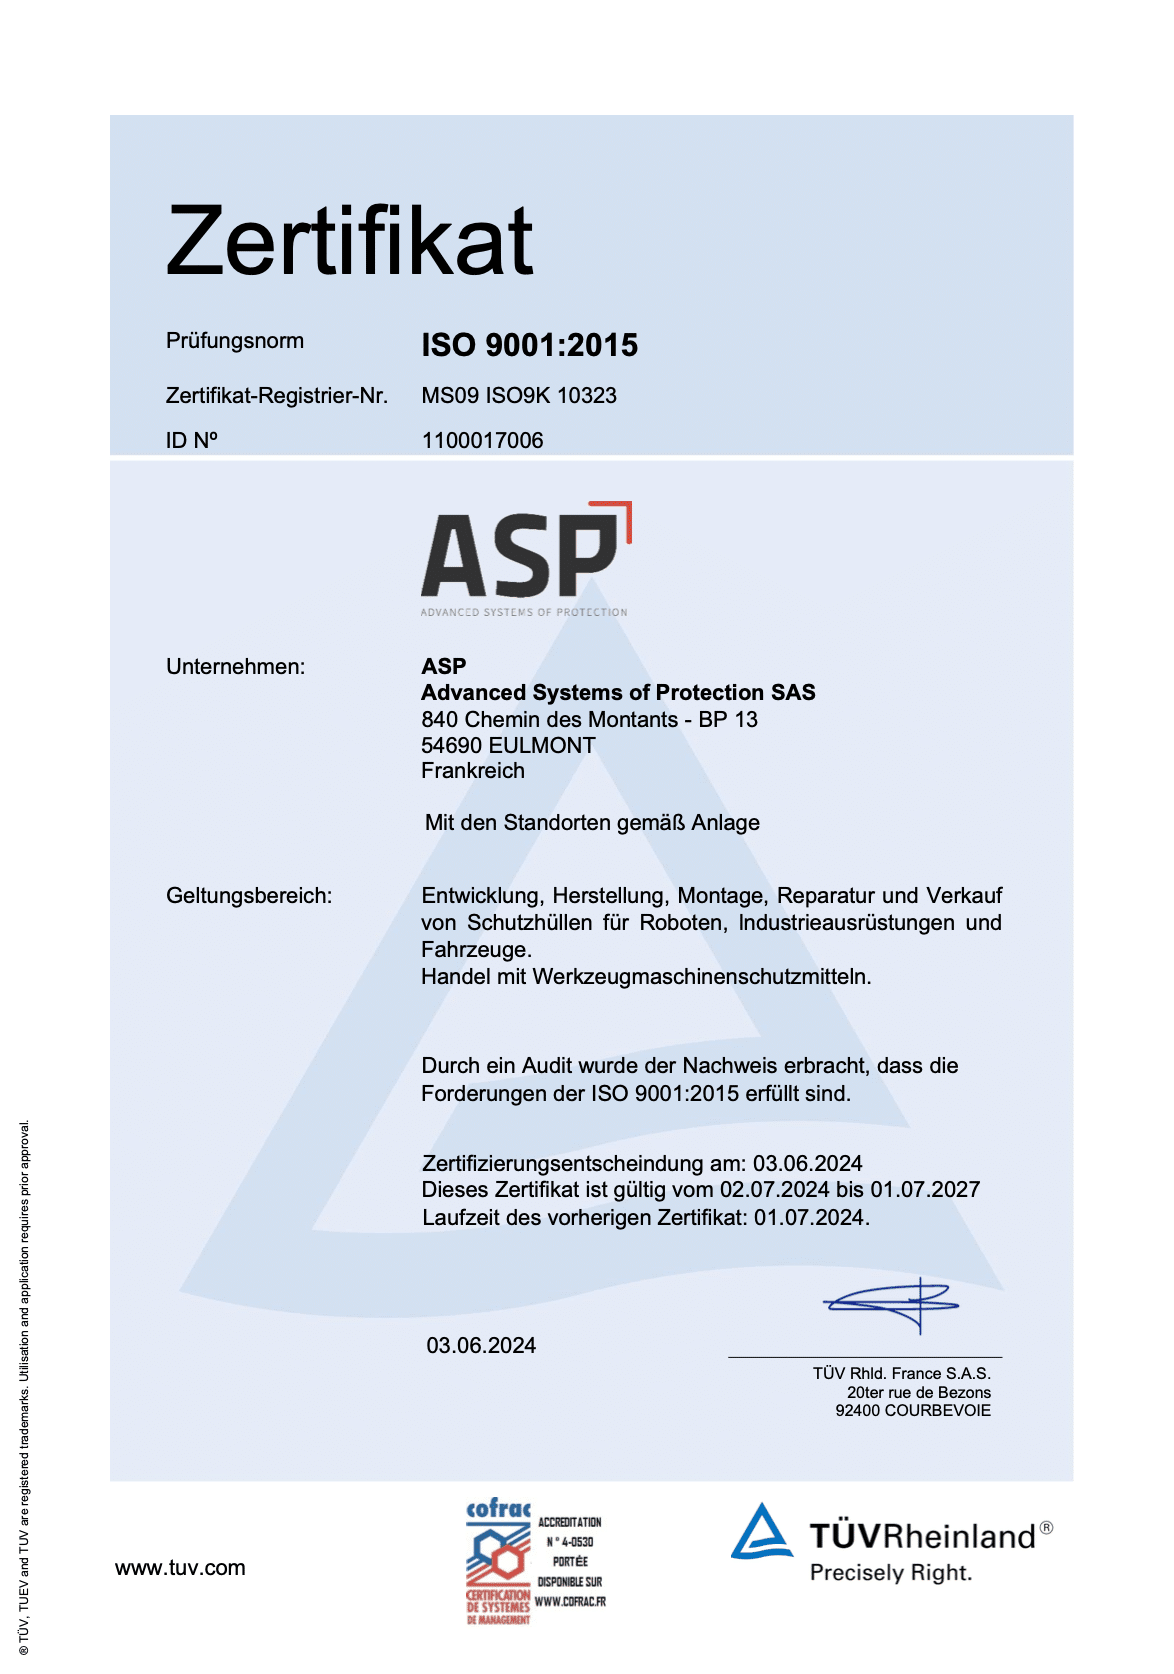 Iso 9001-Zertifizierung, die das Unternehmen ASP Protection am 03.06.2024 erhalten hat. Das Dokument ist in weißer Schrift auf blauem Grund geschrieben.